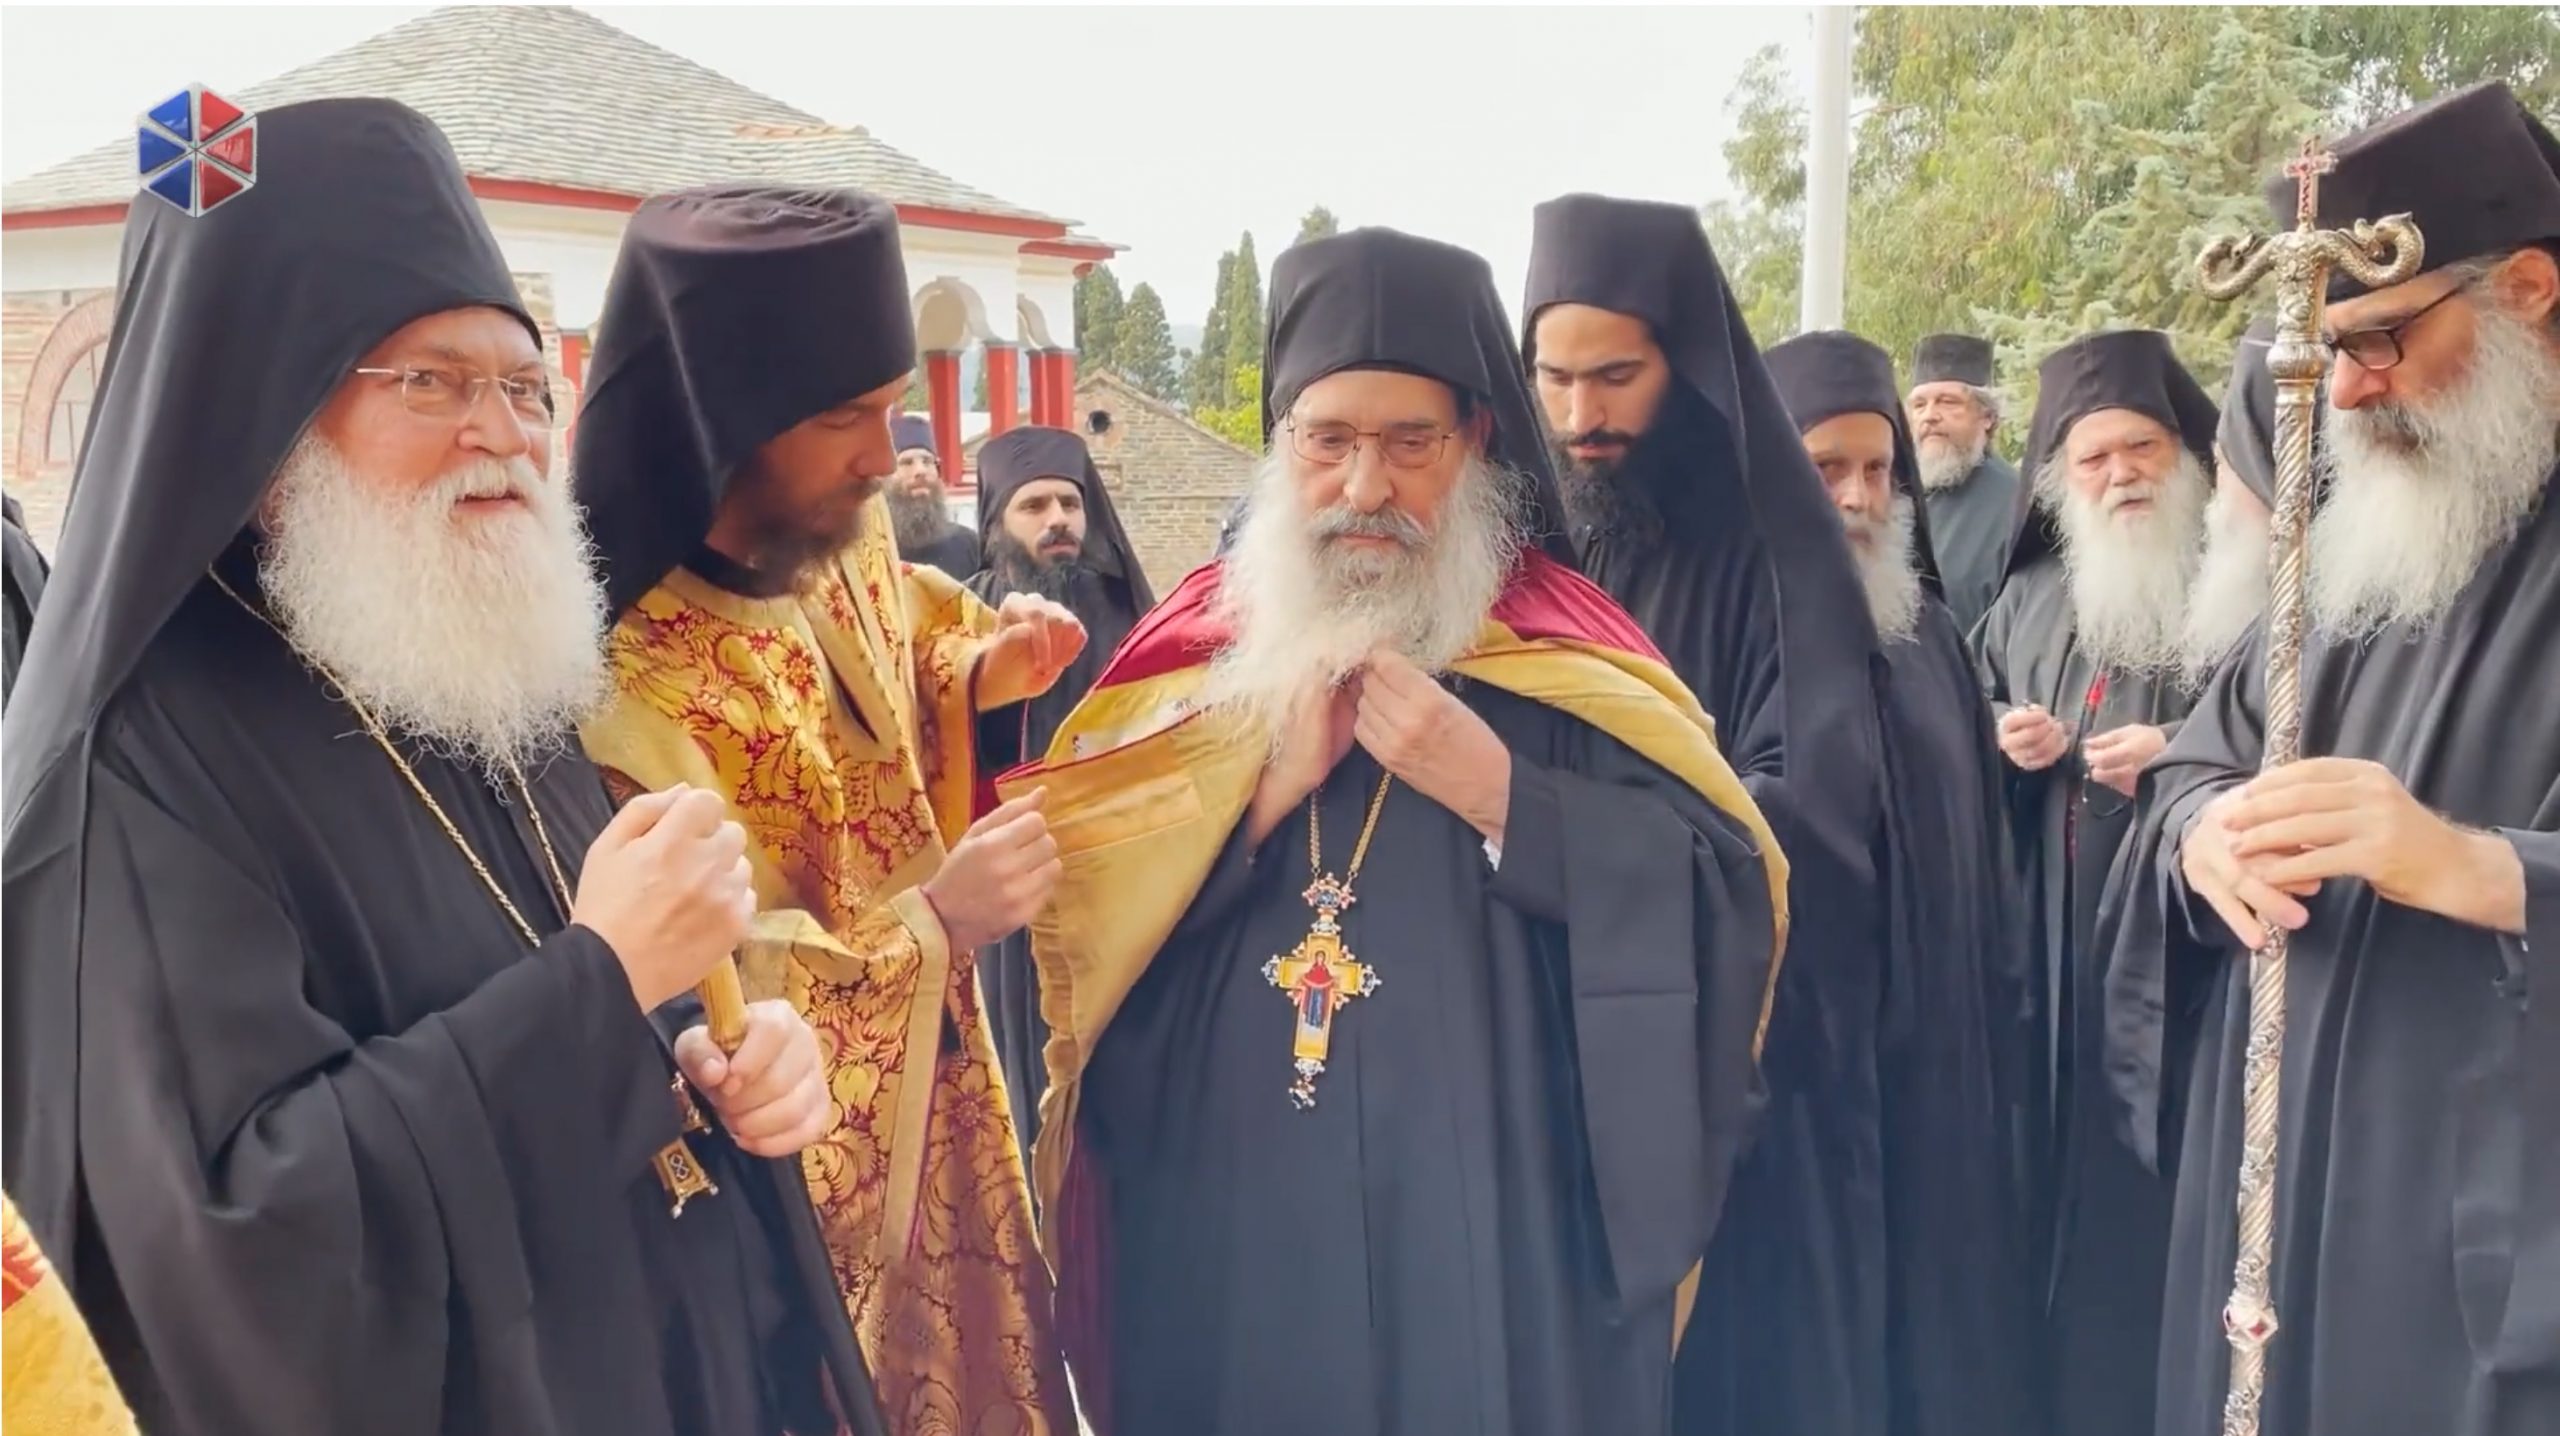 Retour à Vatopédi de l’archimandrite Éphrem, après trois mois et demi de traitement contre la COVID-19